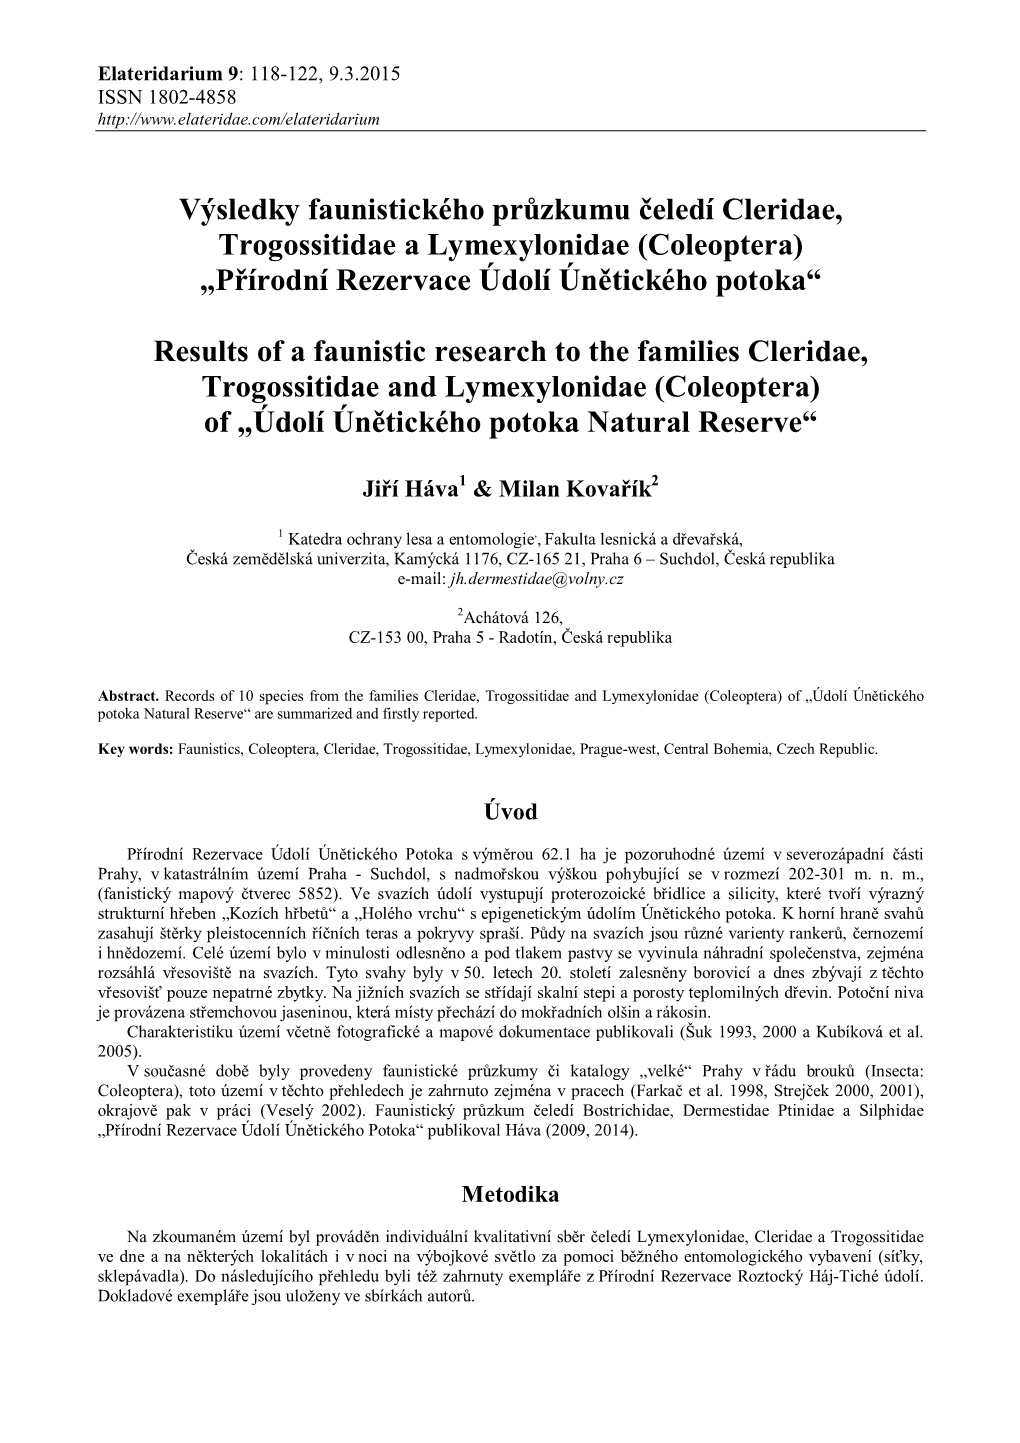 Výsledky Faunistického Průzkumu Čeledí Cleridae, Trogossitidae a Lymexylonidae (Coleoptera) „Přírodní Rezervace Údolí Únětického Potoka“